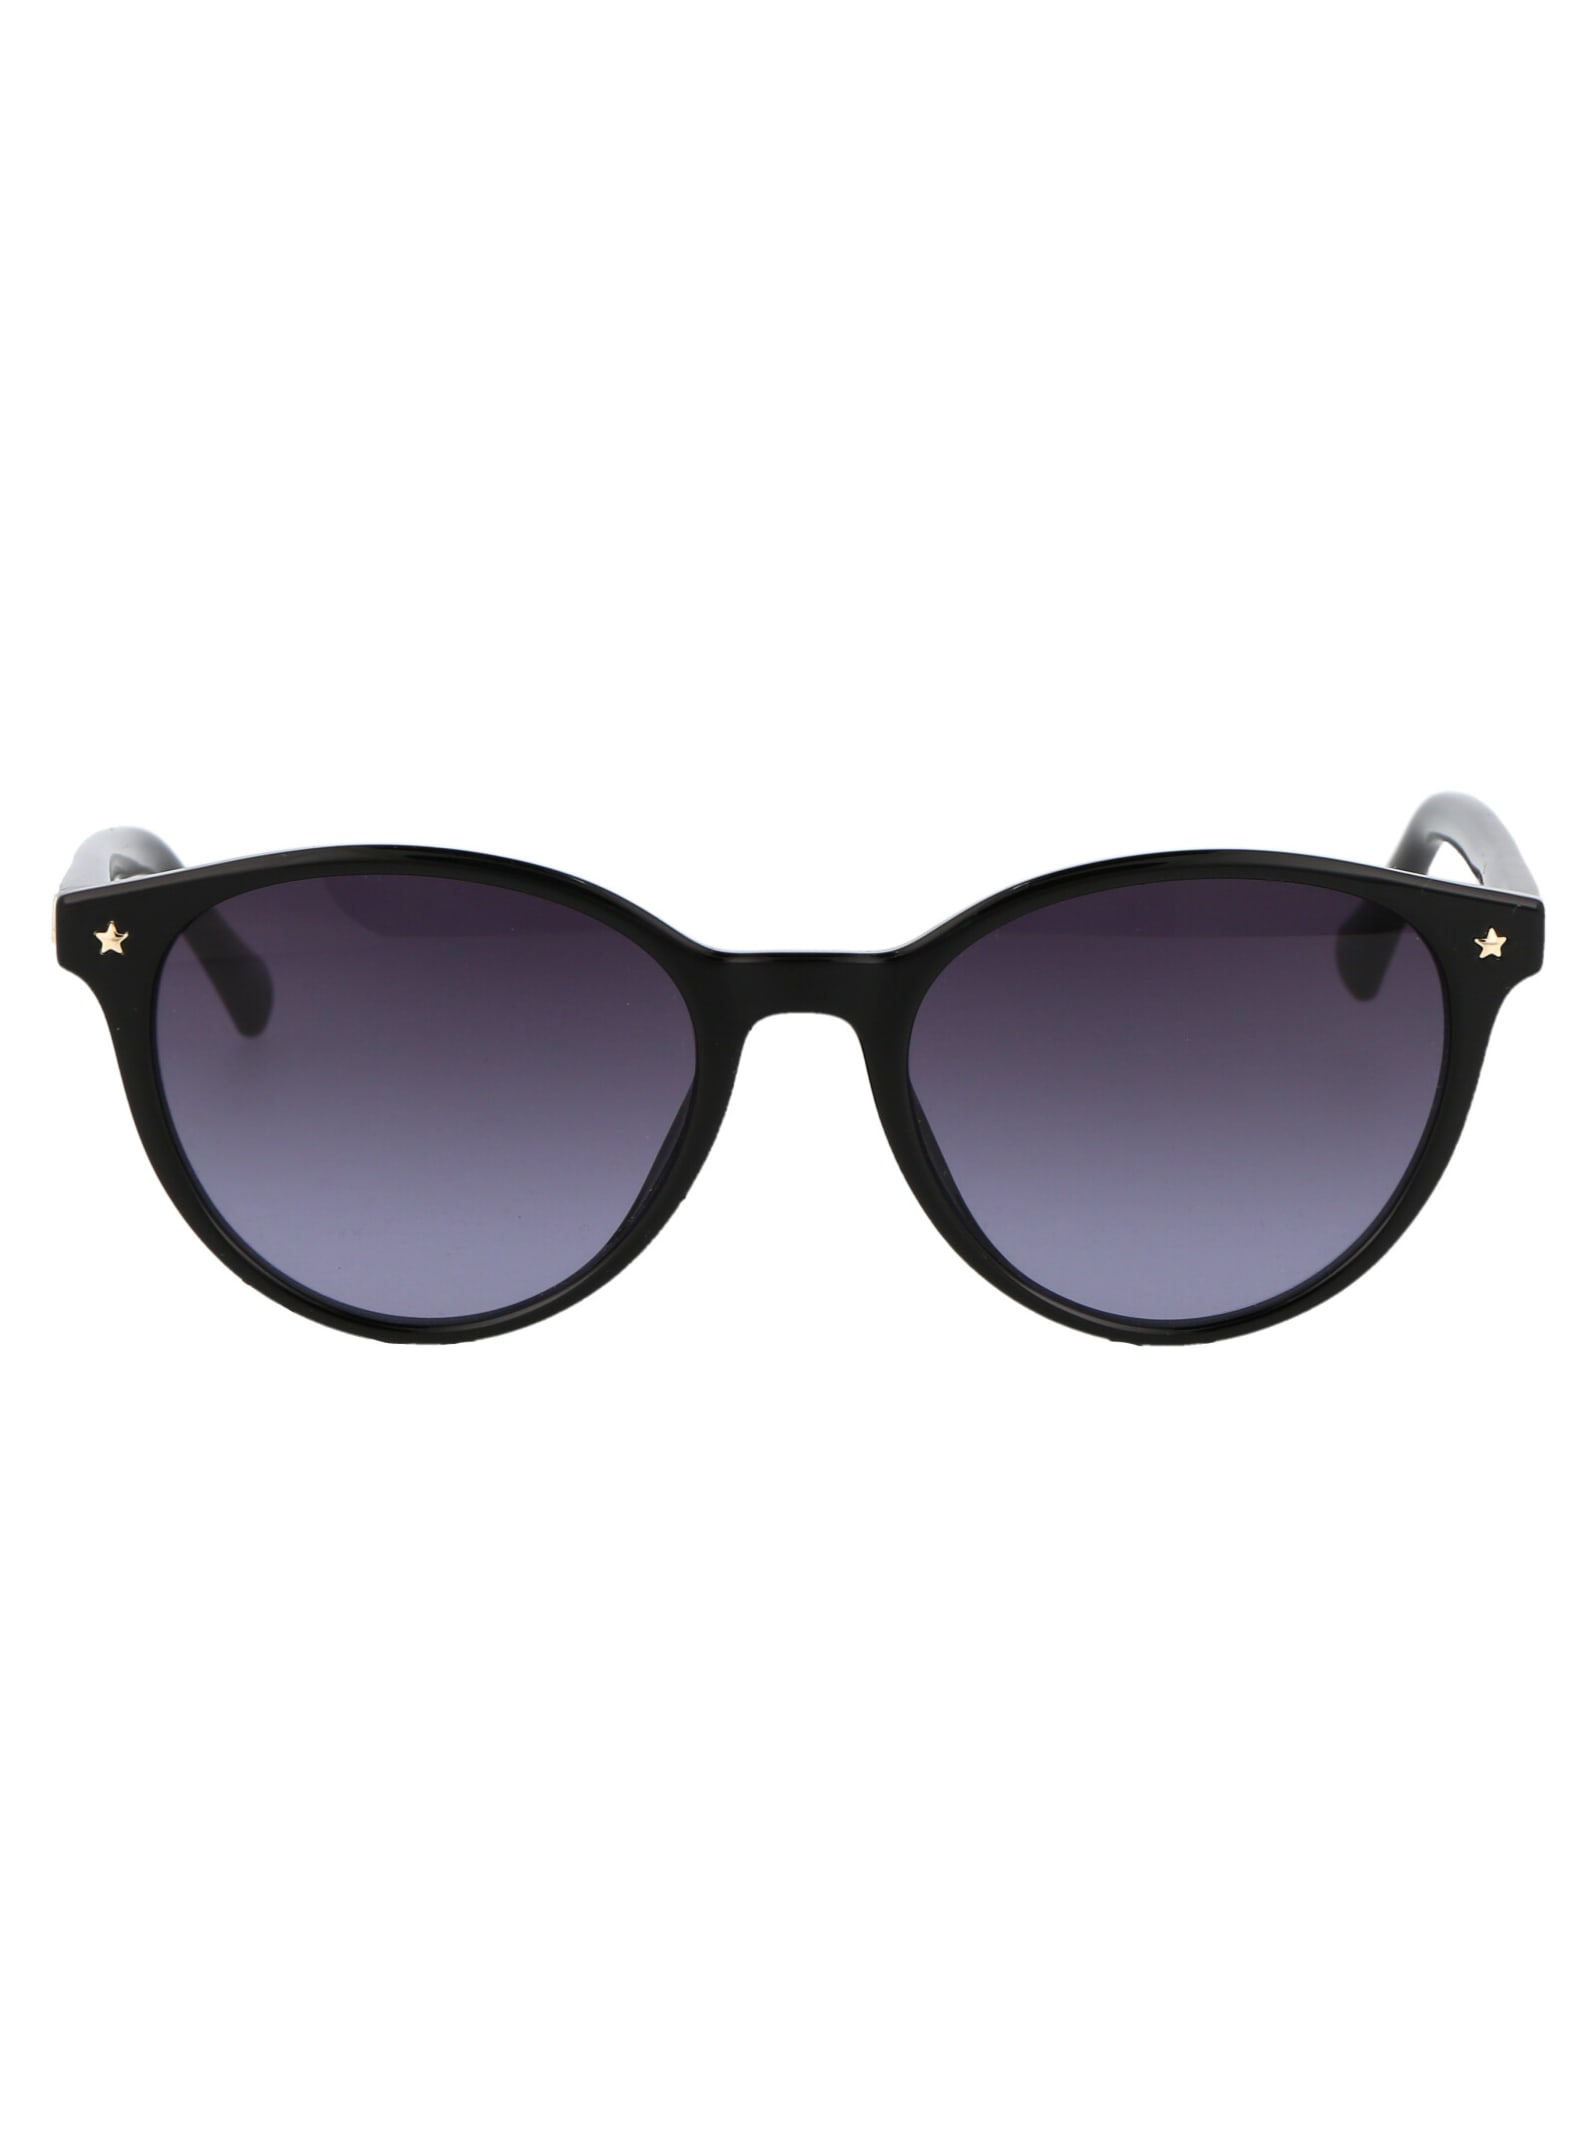 Cf 1008/s Sunglasses